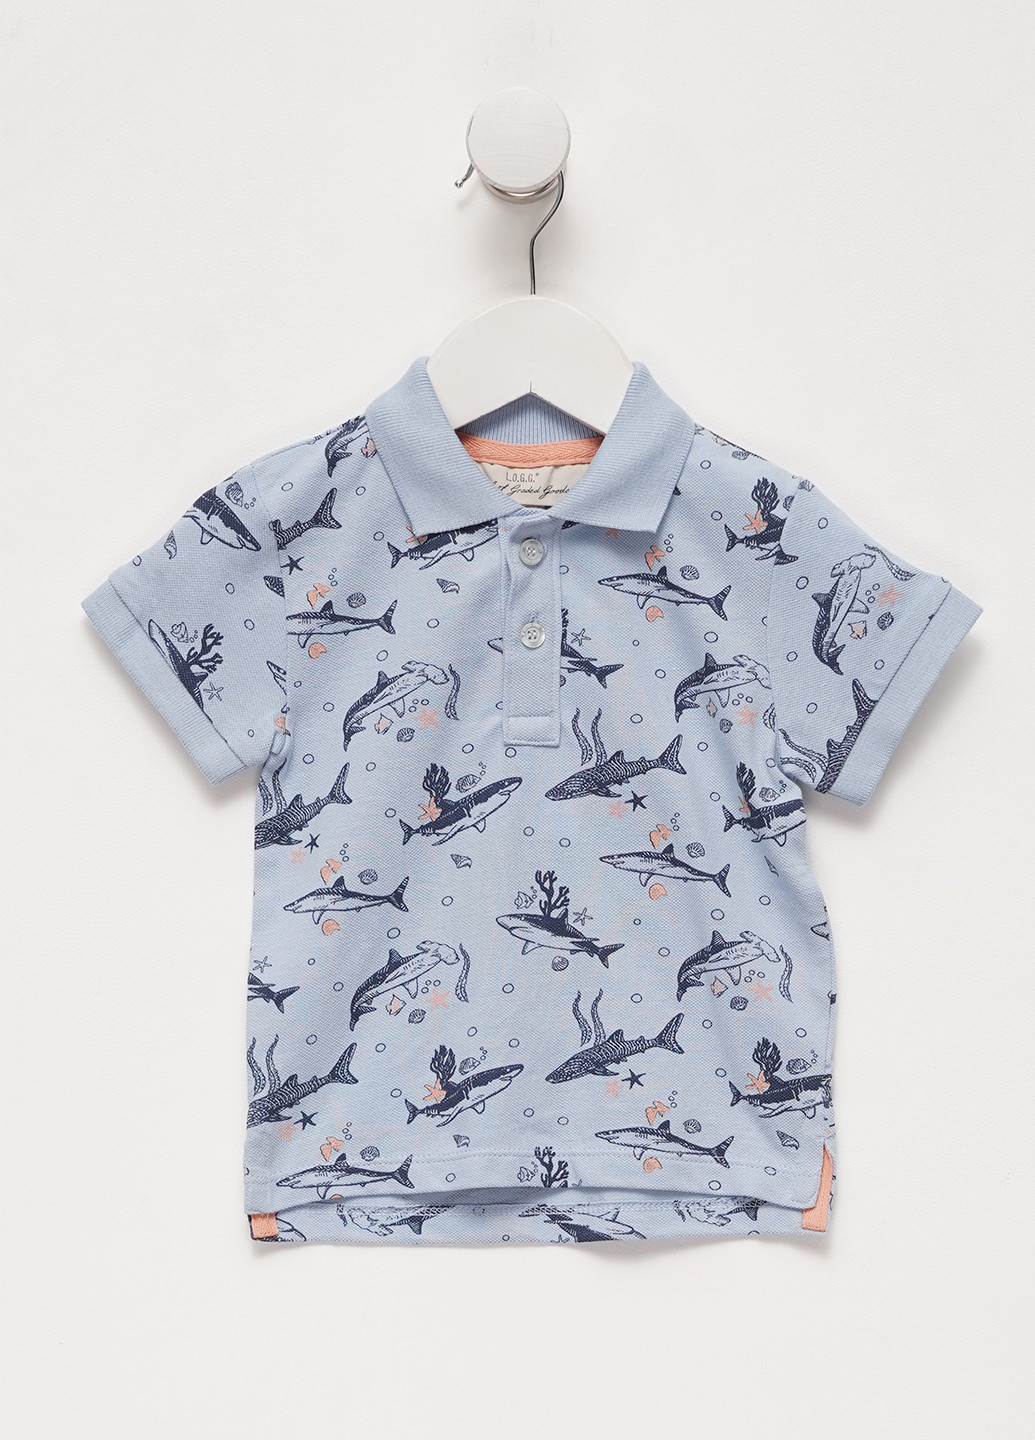 Темно-голубой детская футболка-поло для мальчика H&M морская тематика